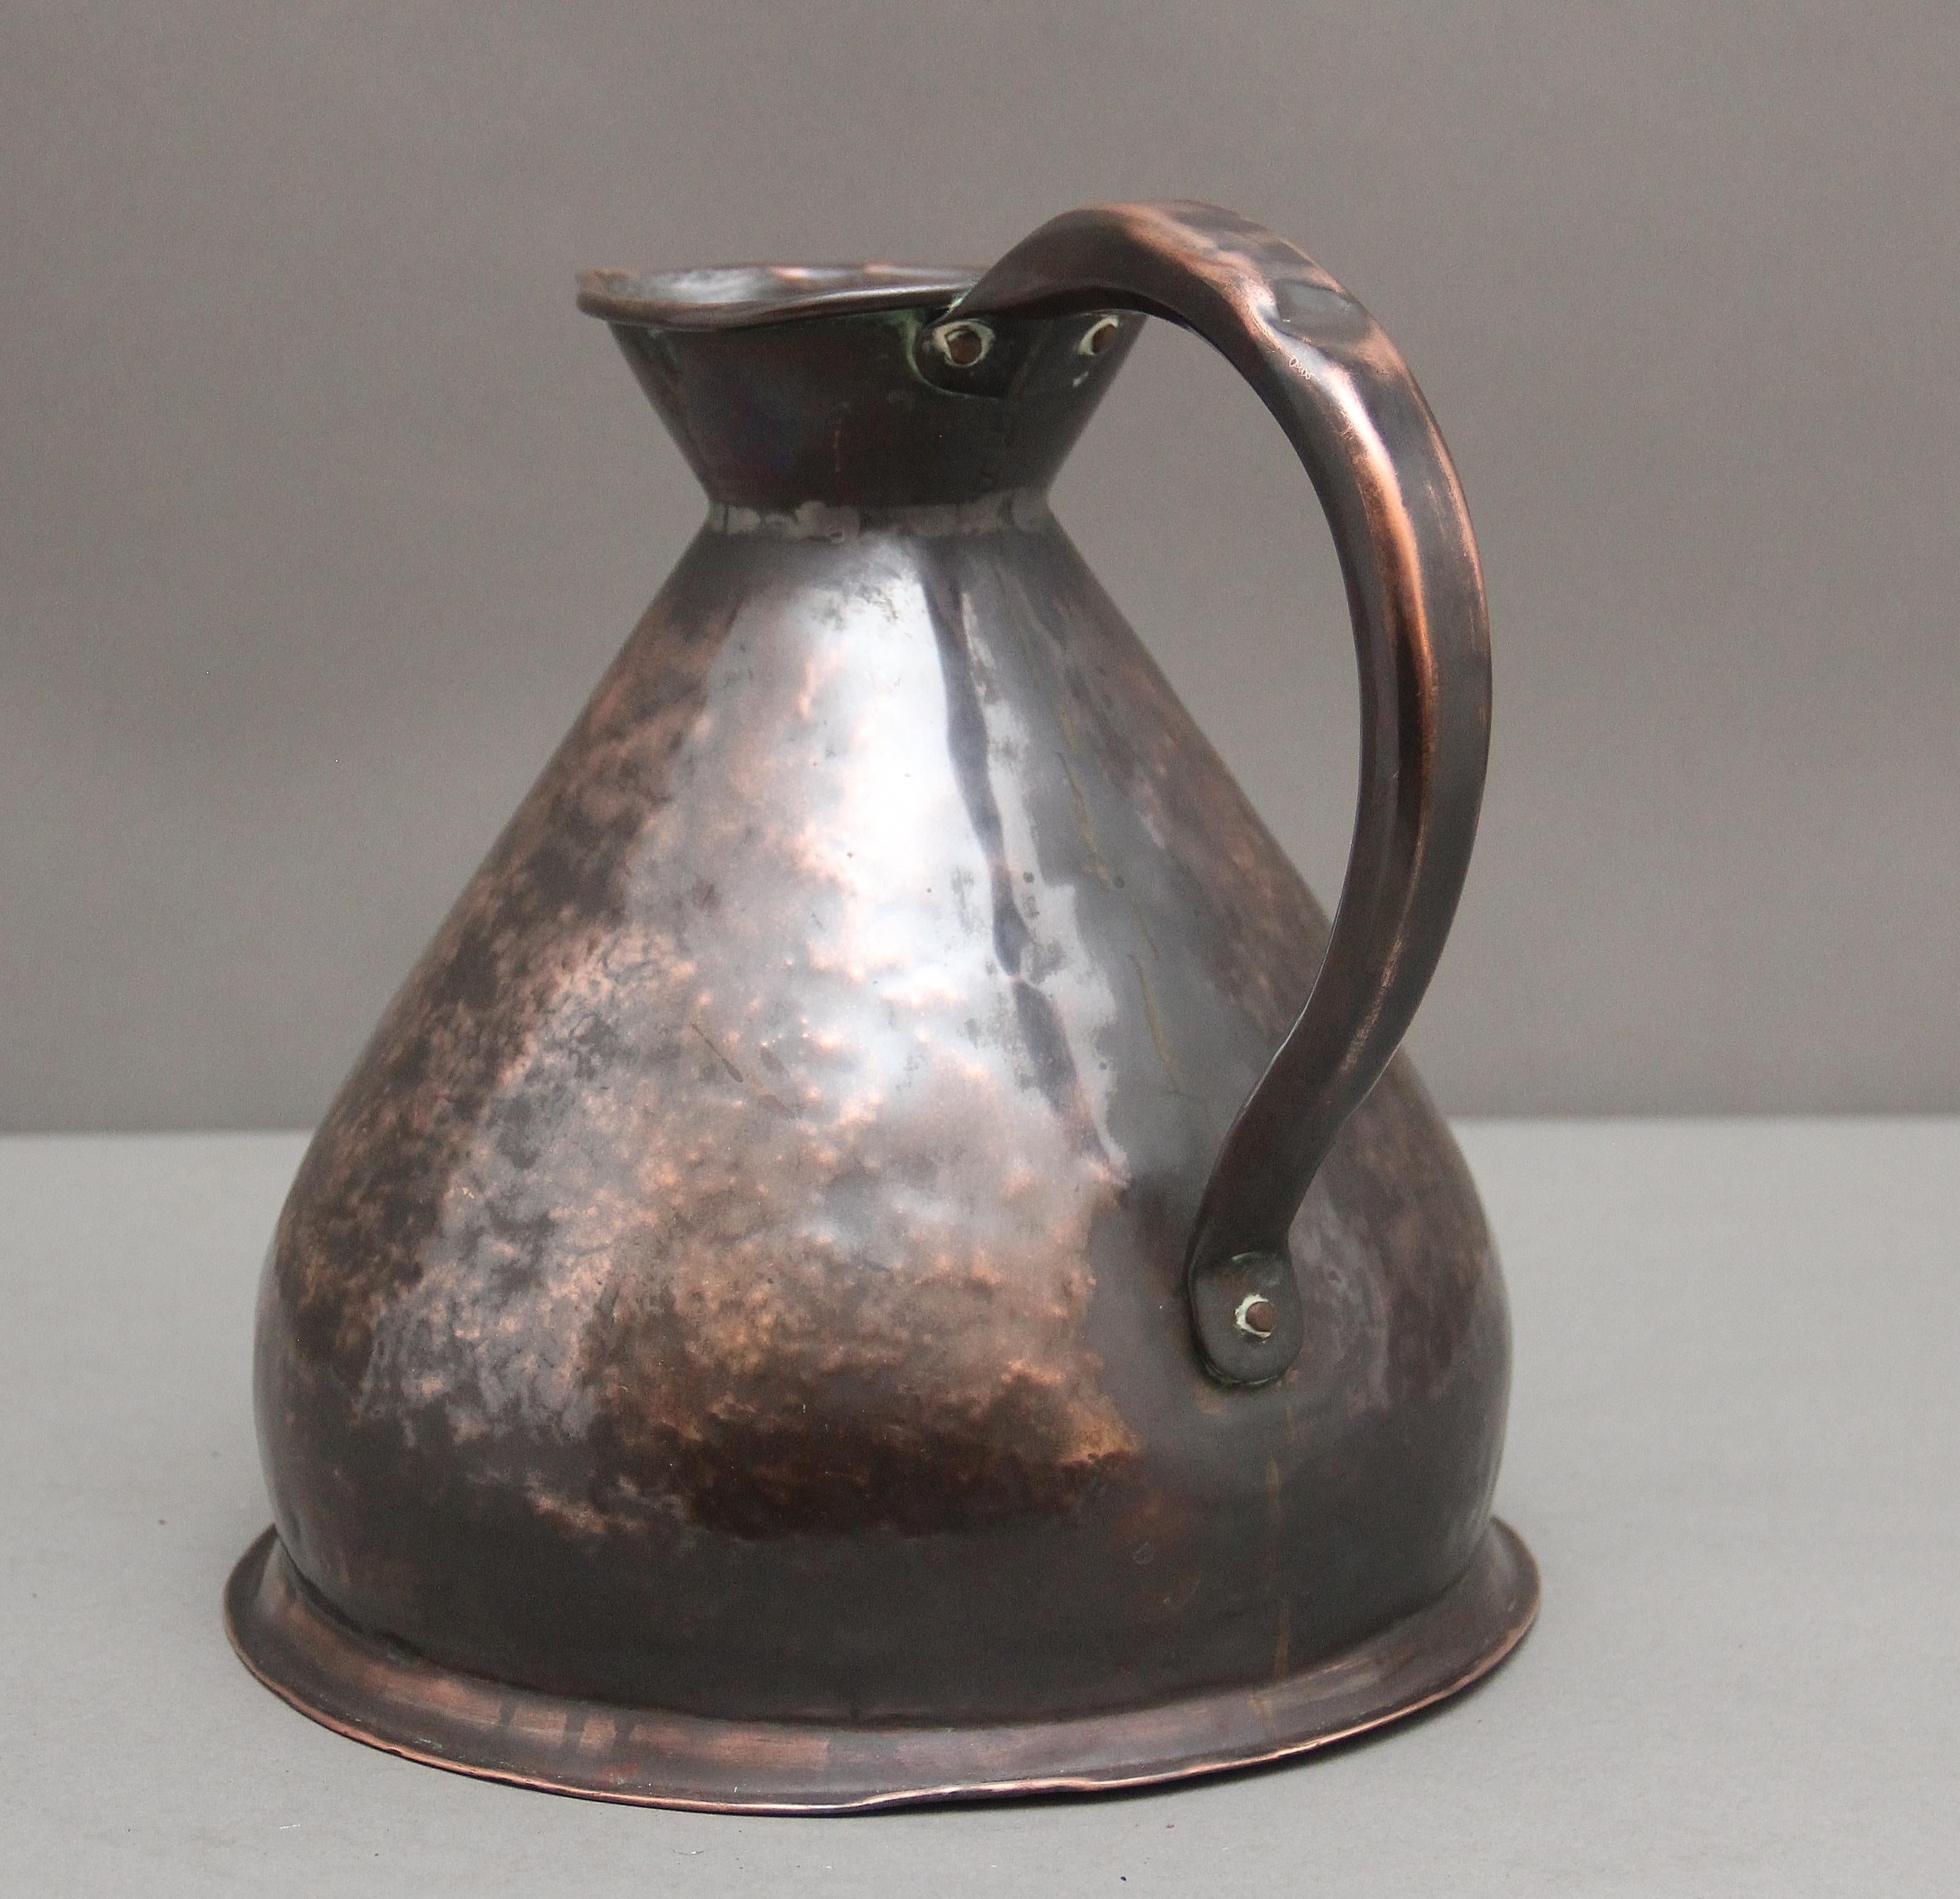 Victorian 19th Century one gallon copper measuring jug